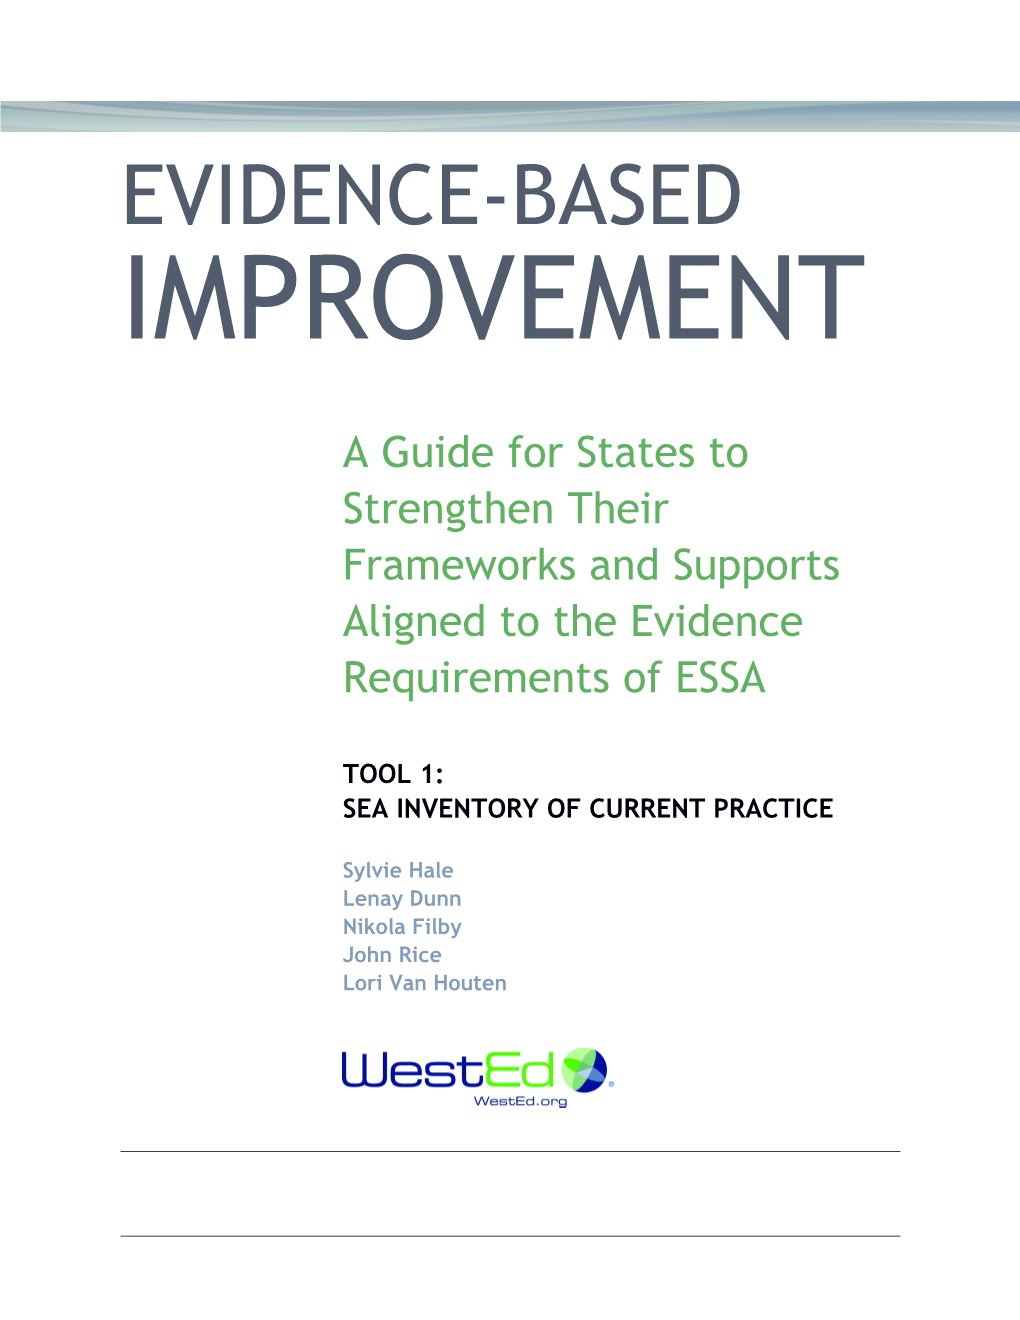 Evidence-Based Improvement